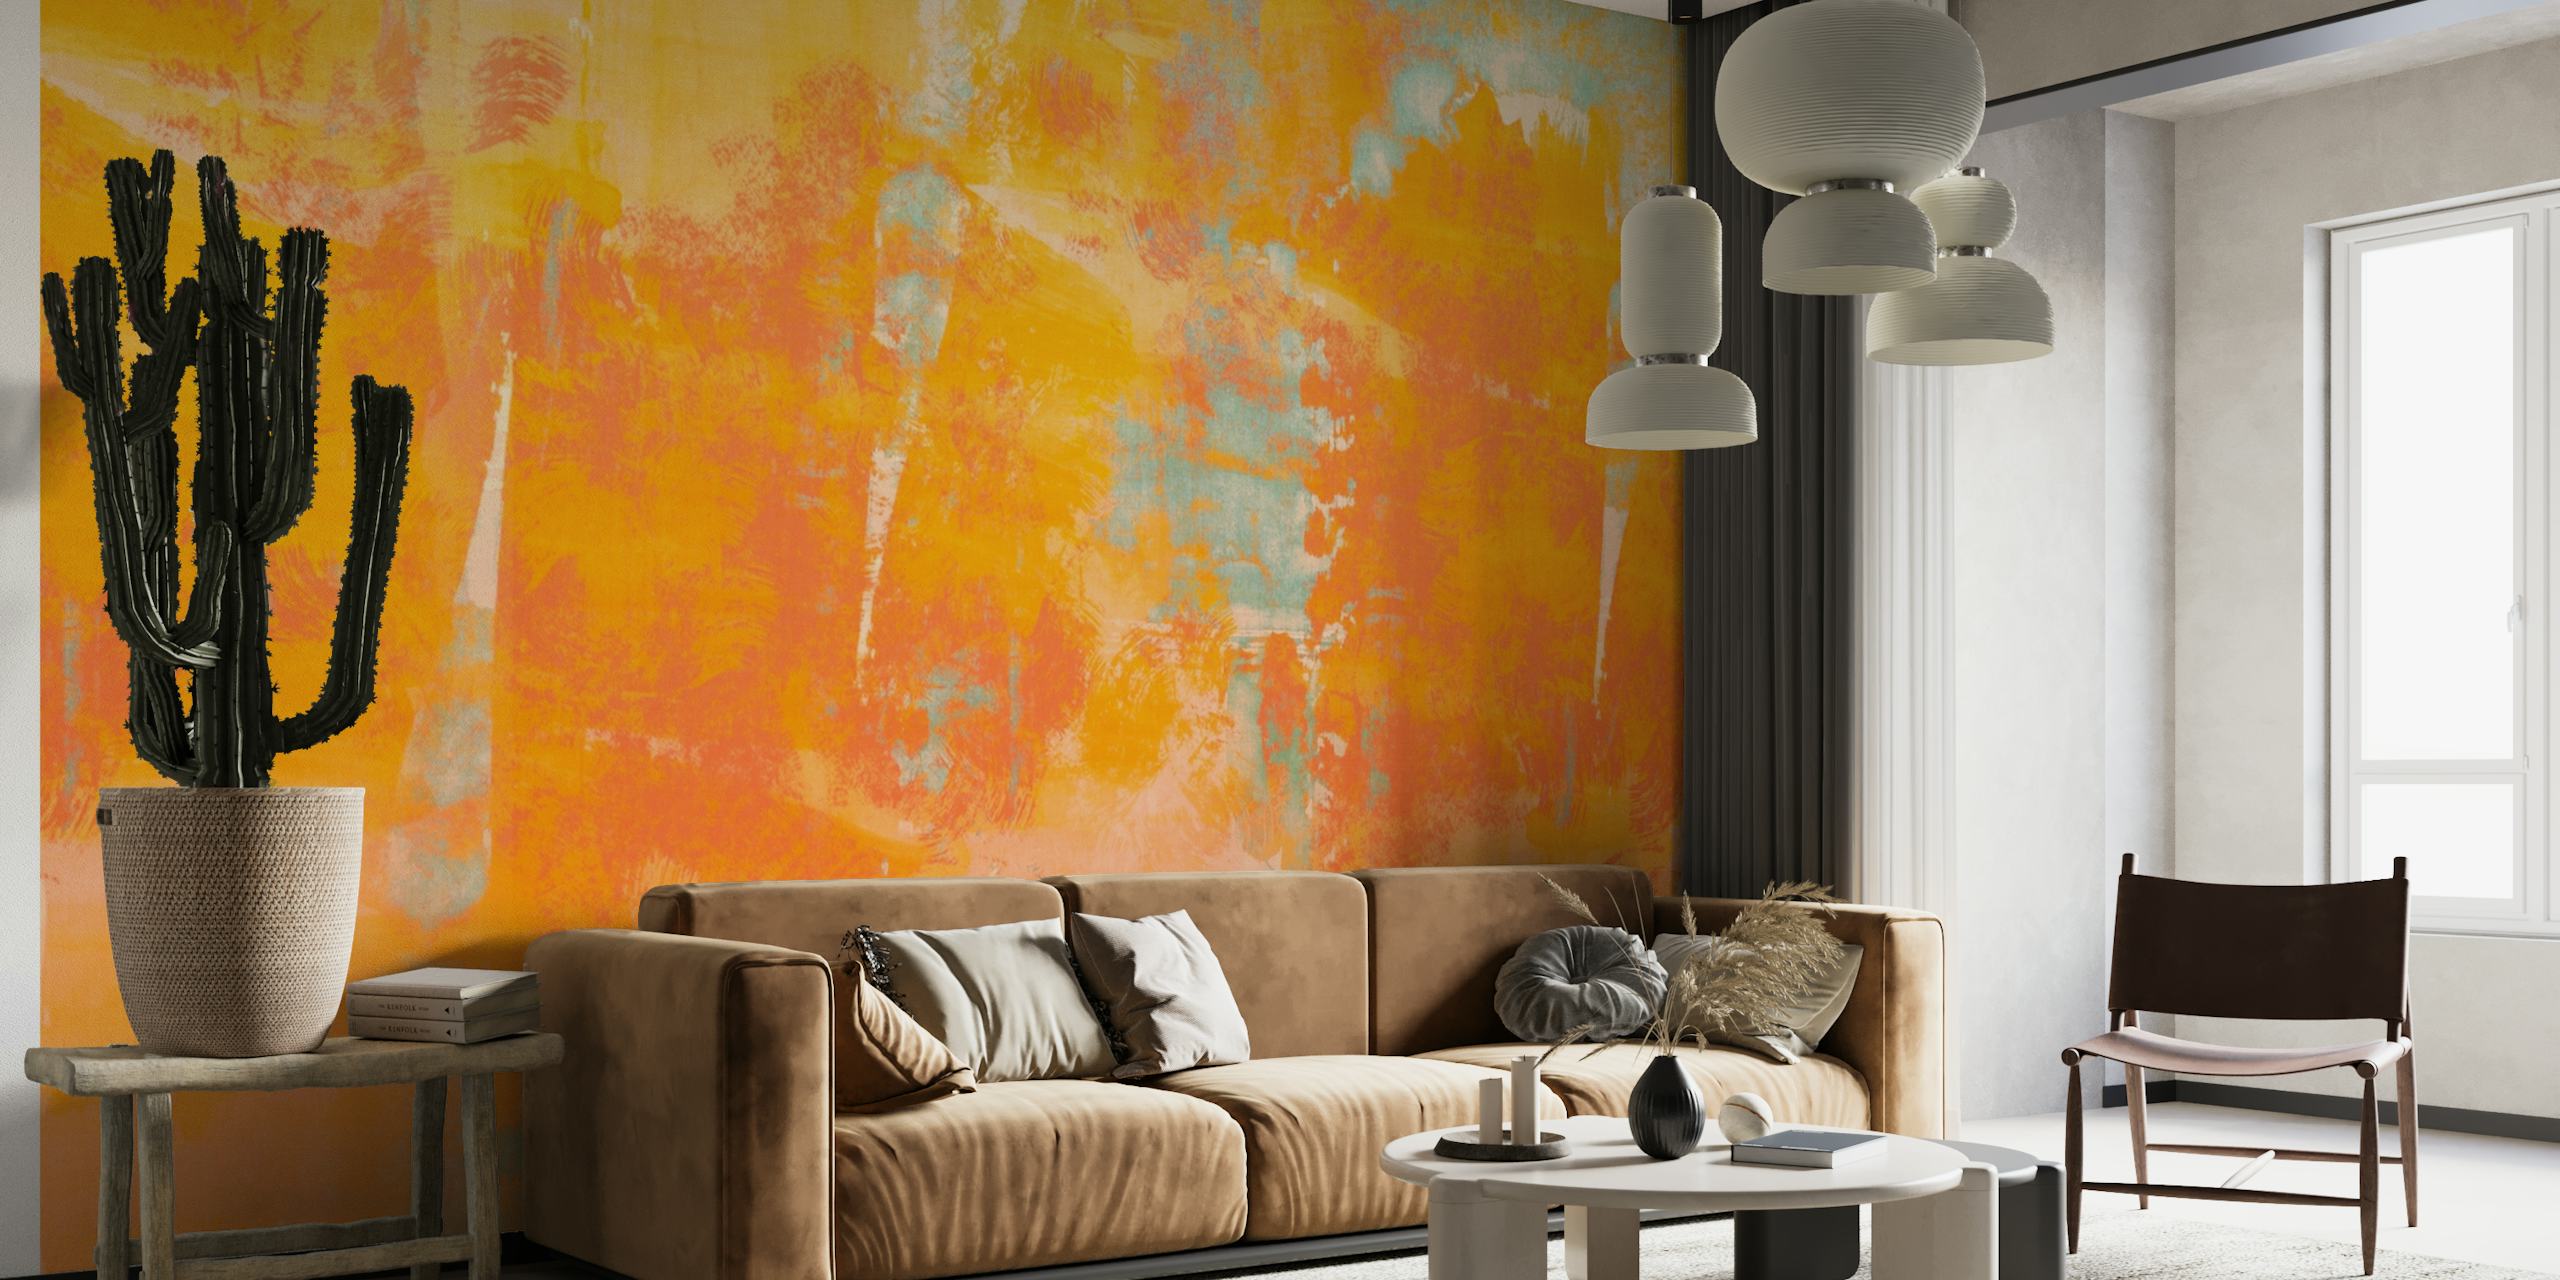 Apstraktni akvarel mural u nijansama koralja i narančaste s taktilnom grunge teksturom